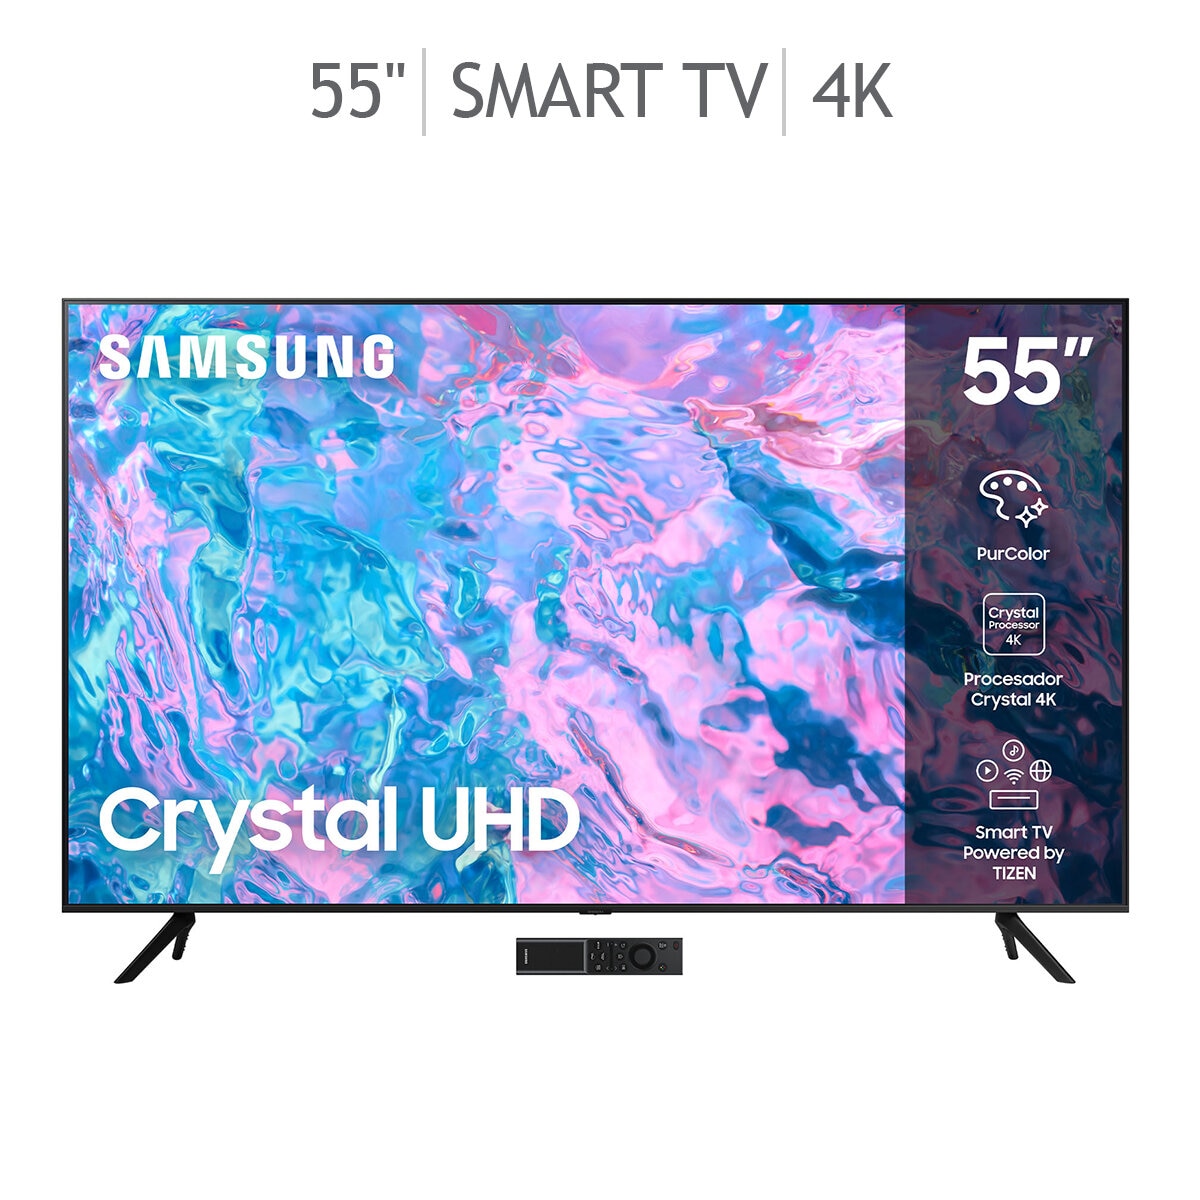 Pantalla Samsung 65 Pulgadas LED 4K Curved Smart TV a precio de socio